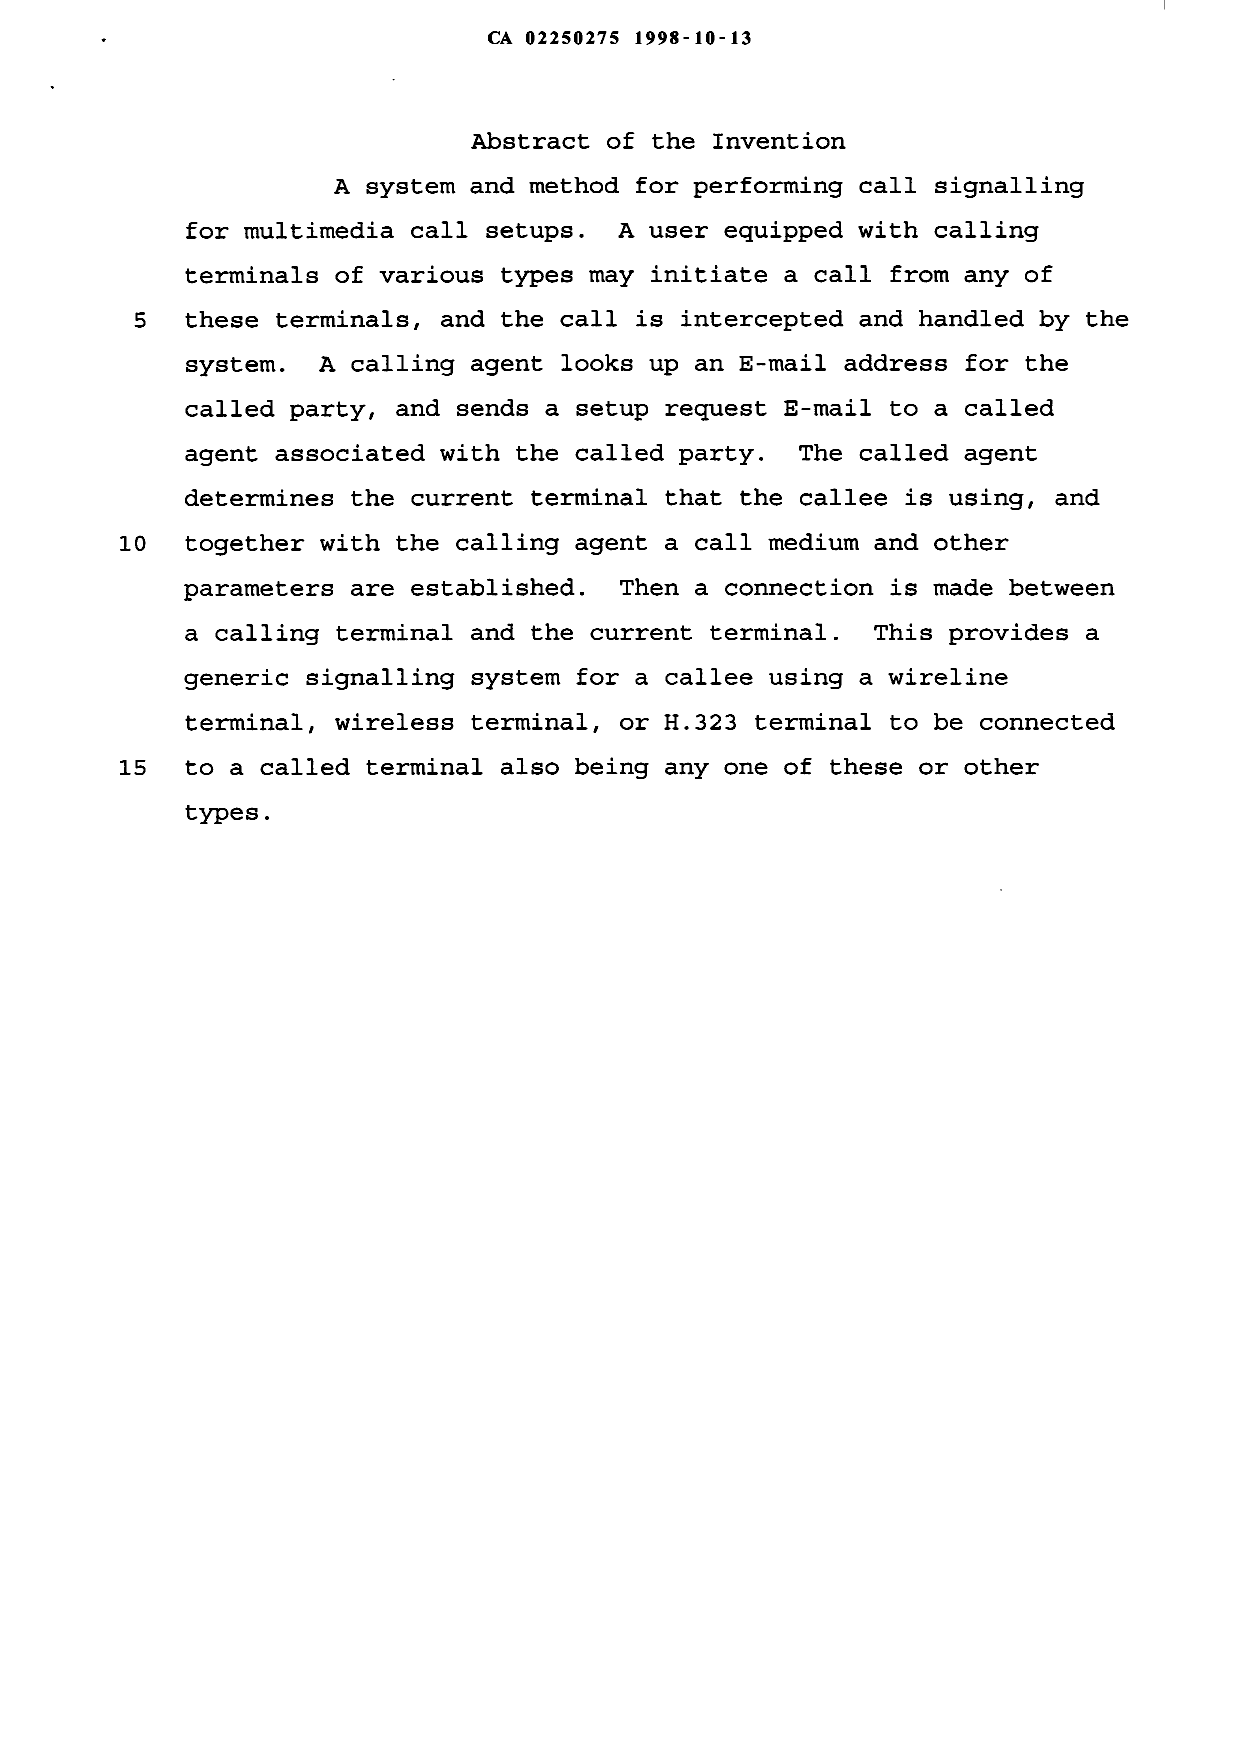 Document de brevet canadien 2250275. Abrégé 19971213. Image 1 de 1